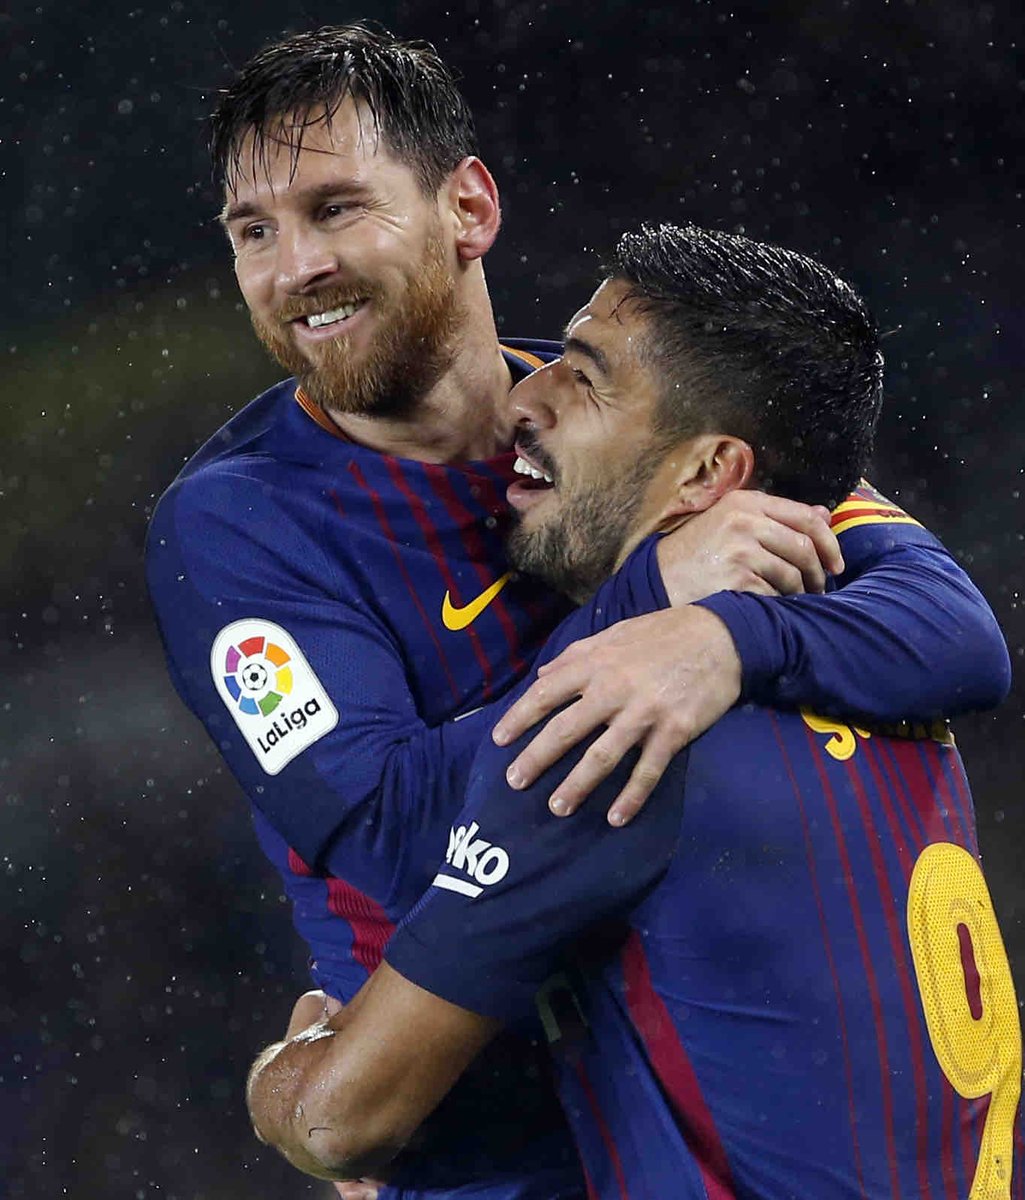 ❤️ Messi - Suárez ❤️

Memories from a #BarçaRealSociedad game 🫶